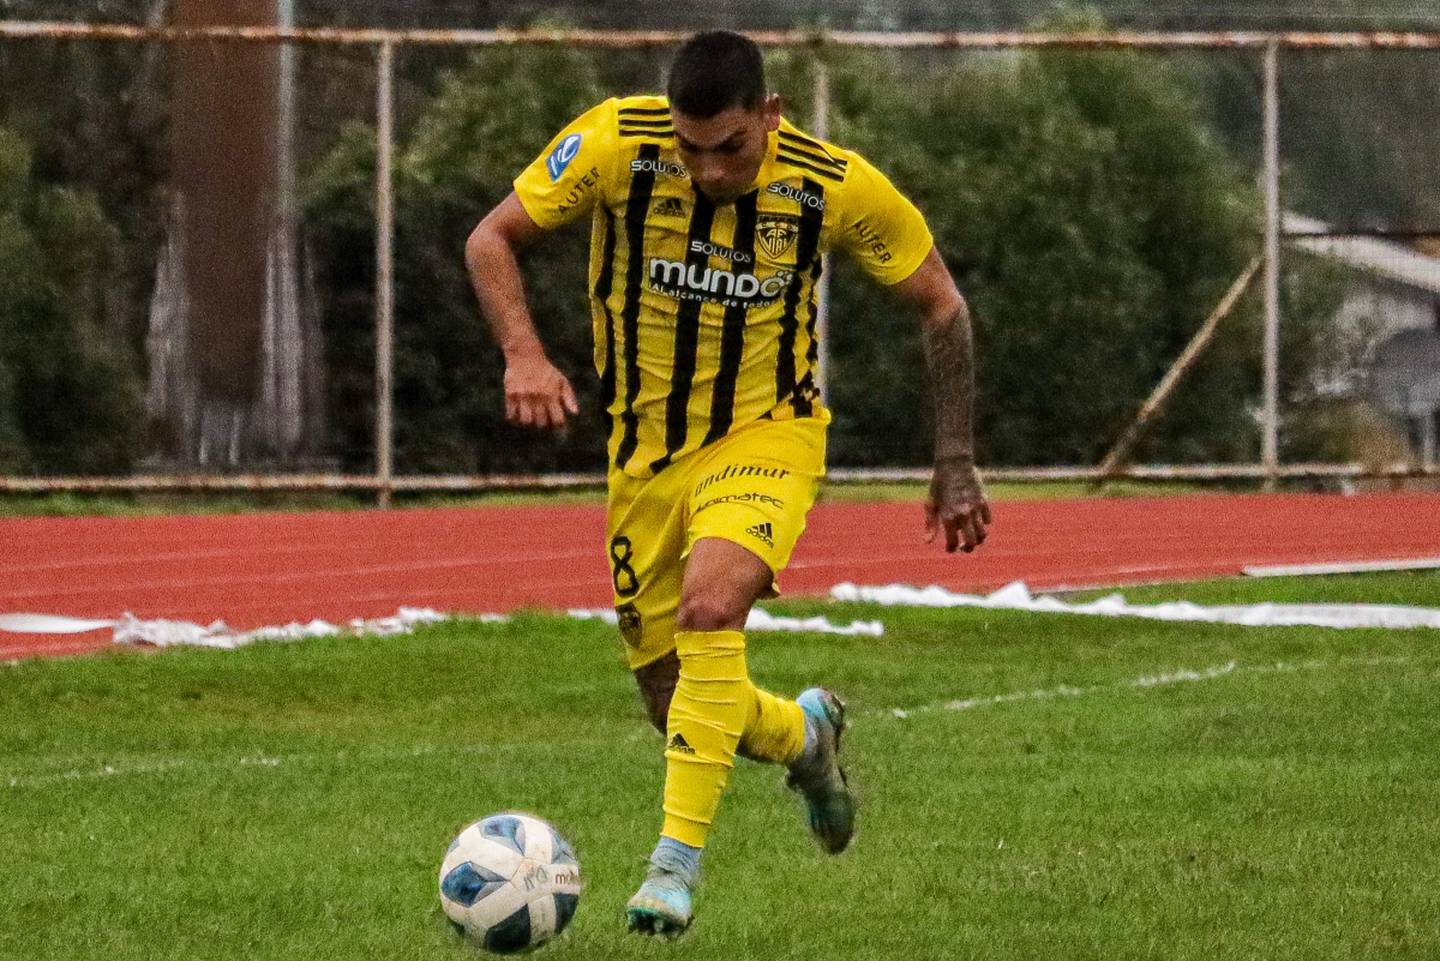 Futbolista de Fernández Vial corriendo de frente con el balón.